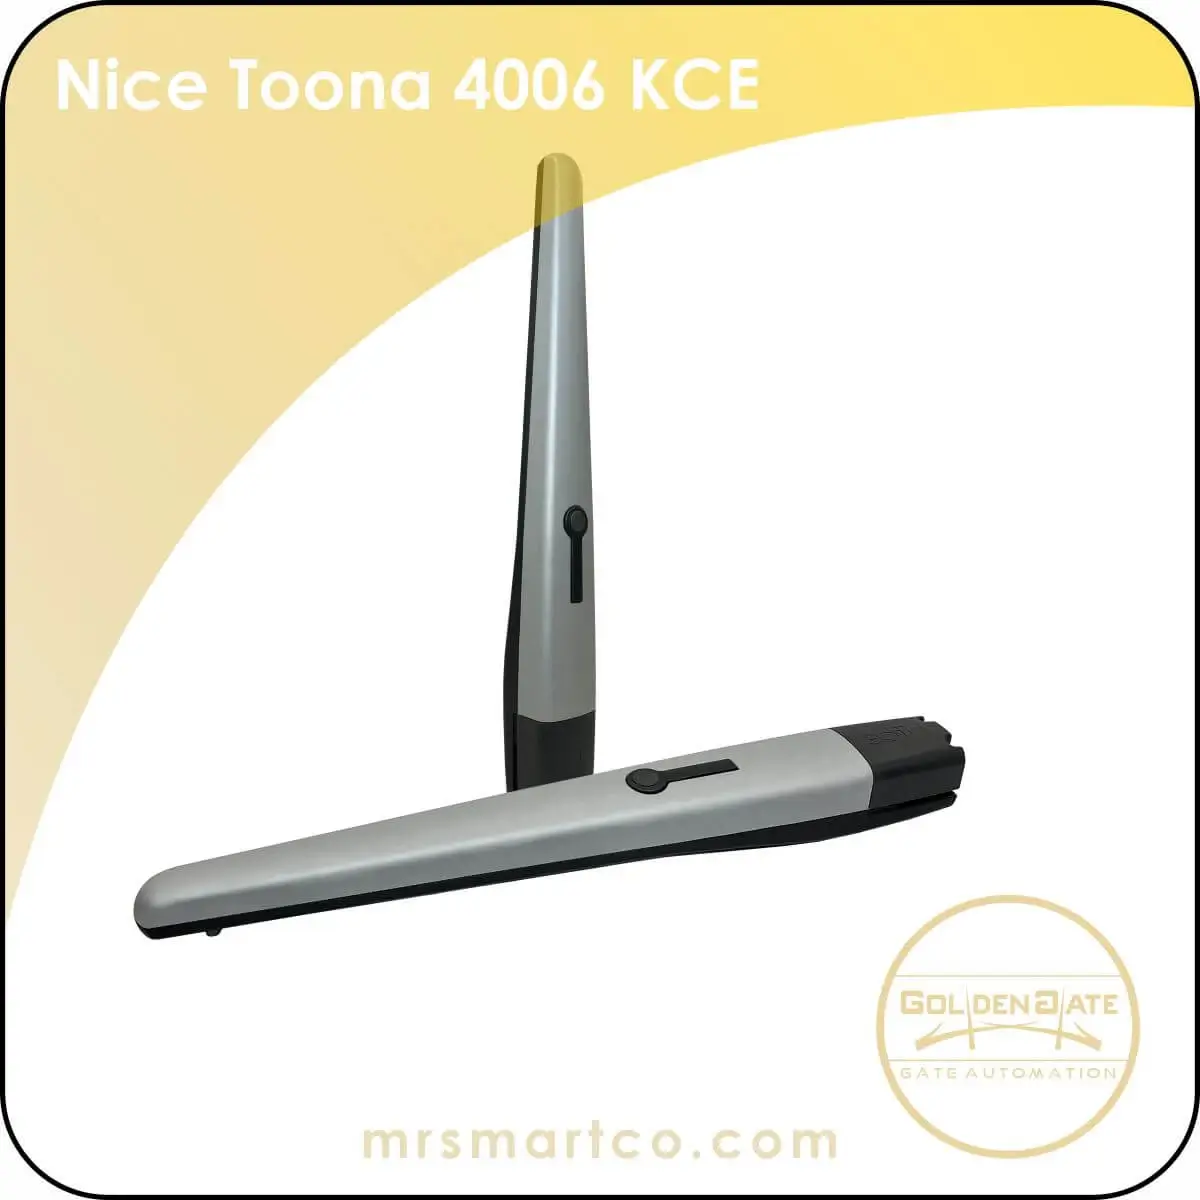 Nice Toona 4006 KCE